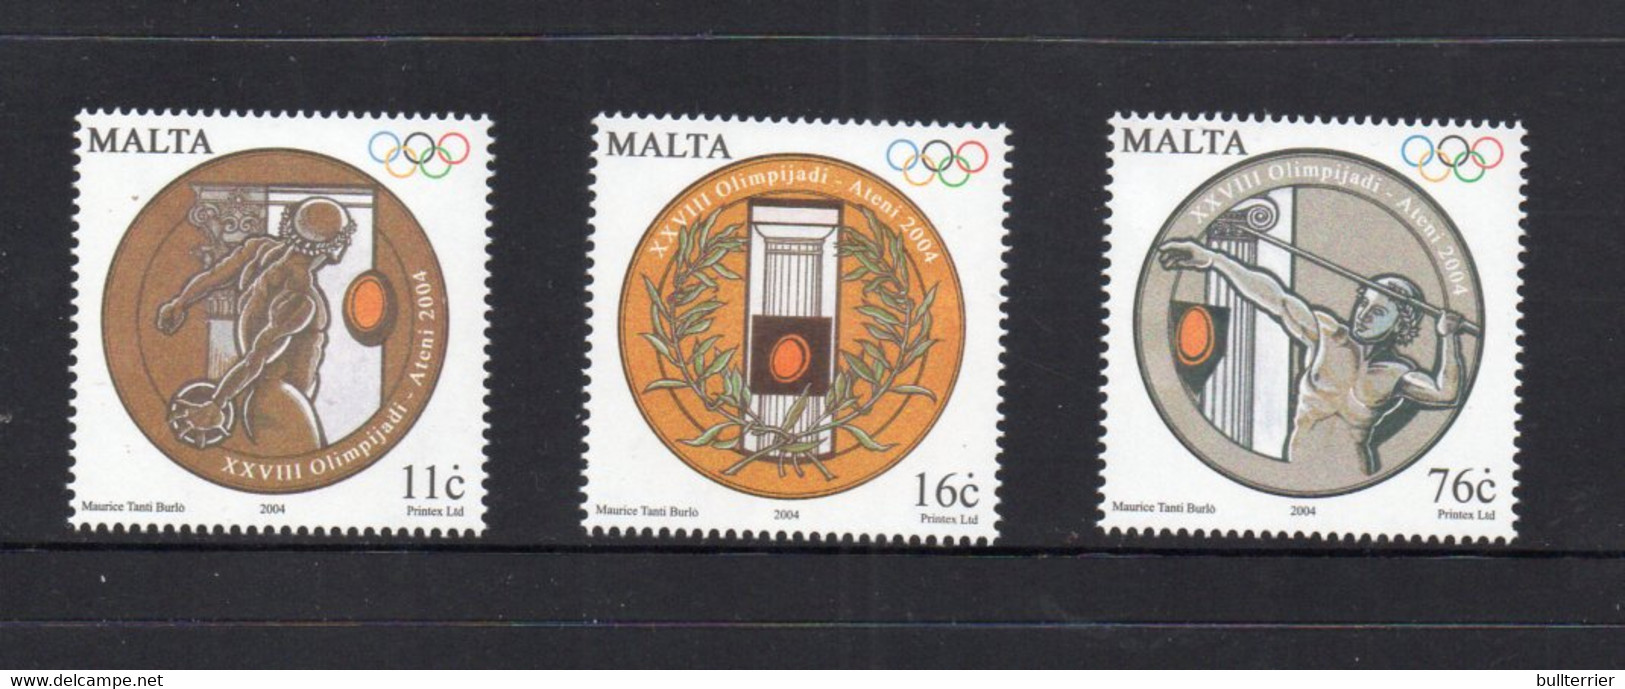 OLYMPICS  - MALTA - 2004 - ATHENS OLYMPICS SET OF 3  MINT NEVER HINGED - Zomer 2004: Athene - Paralympics